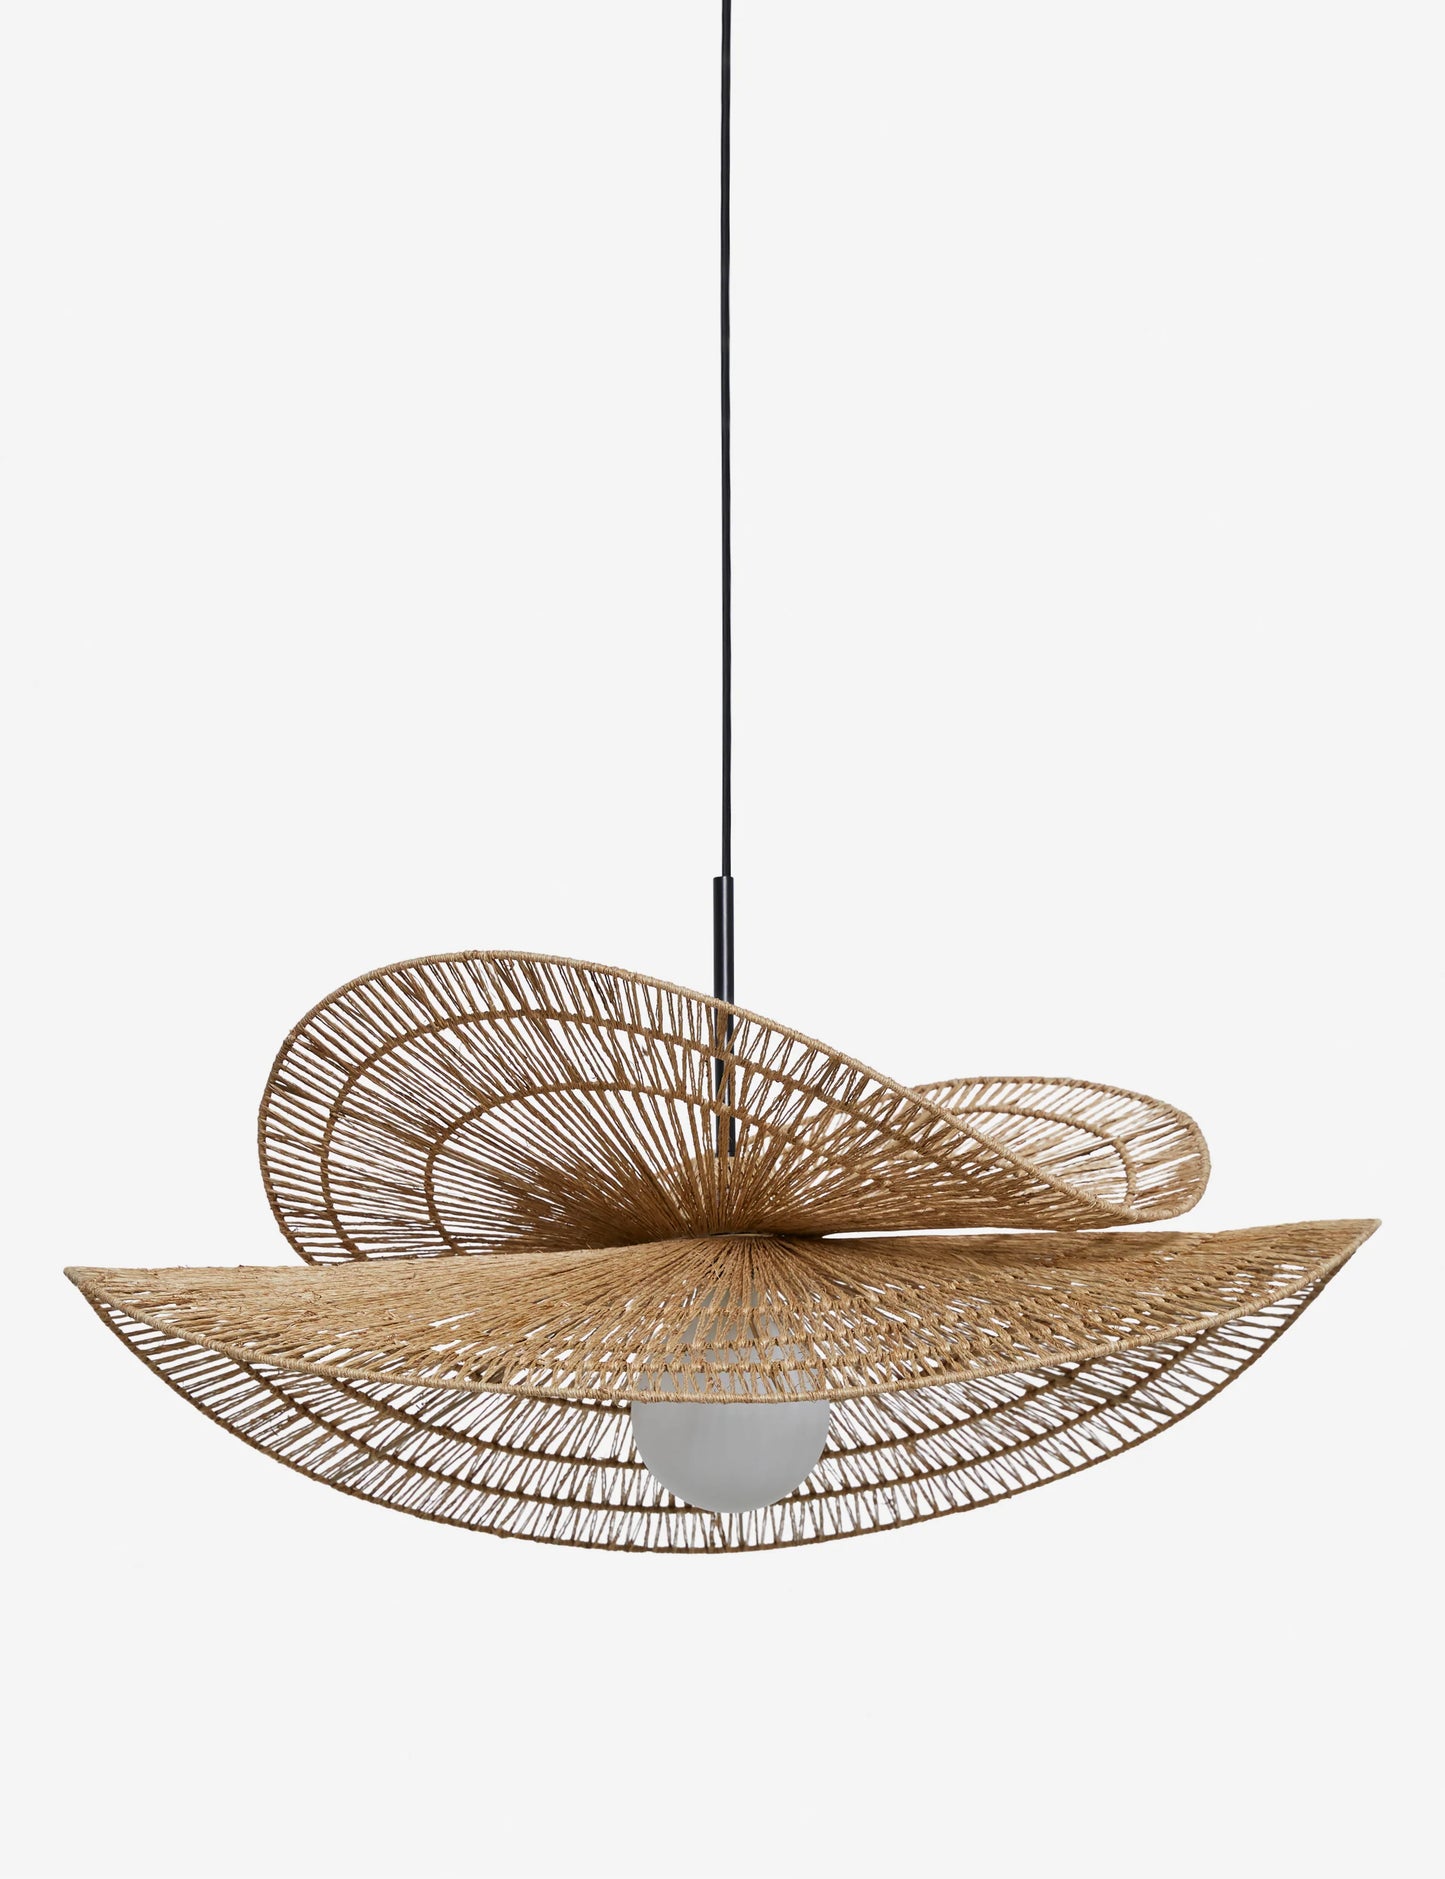 Bamboo Hanging lamp for Living Room | Rattan Pendant light | Cane ceiling light - Arshia - Akway